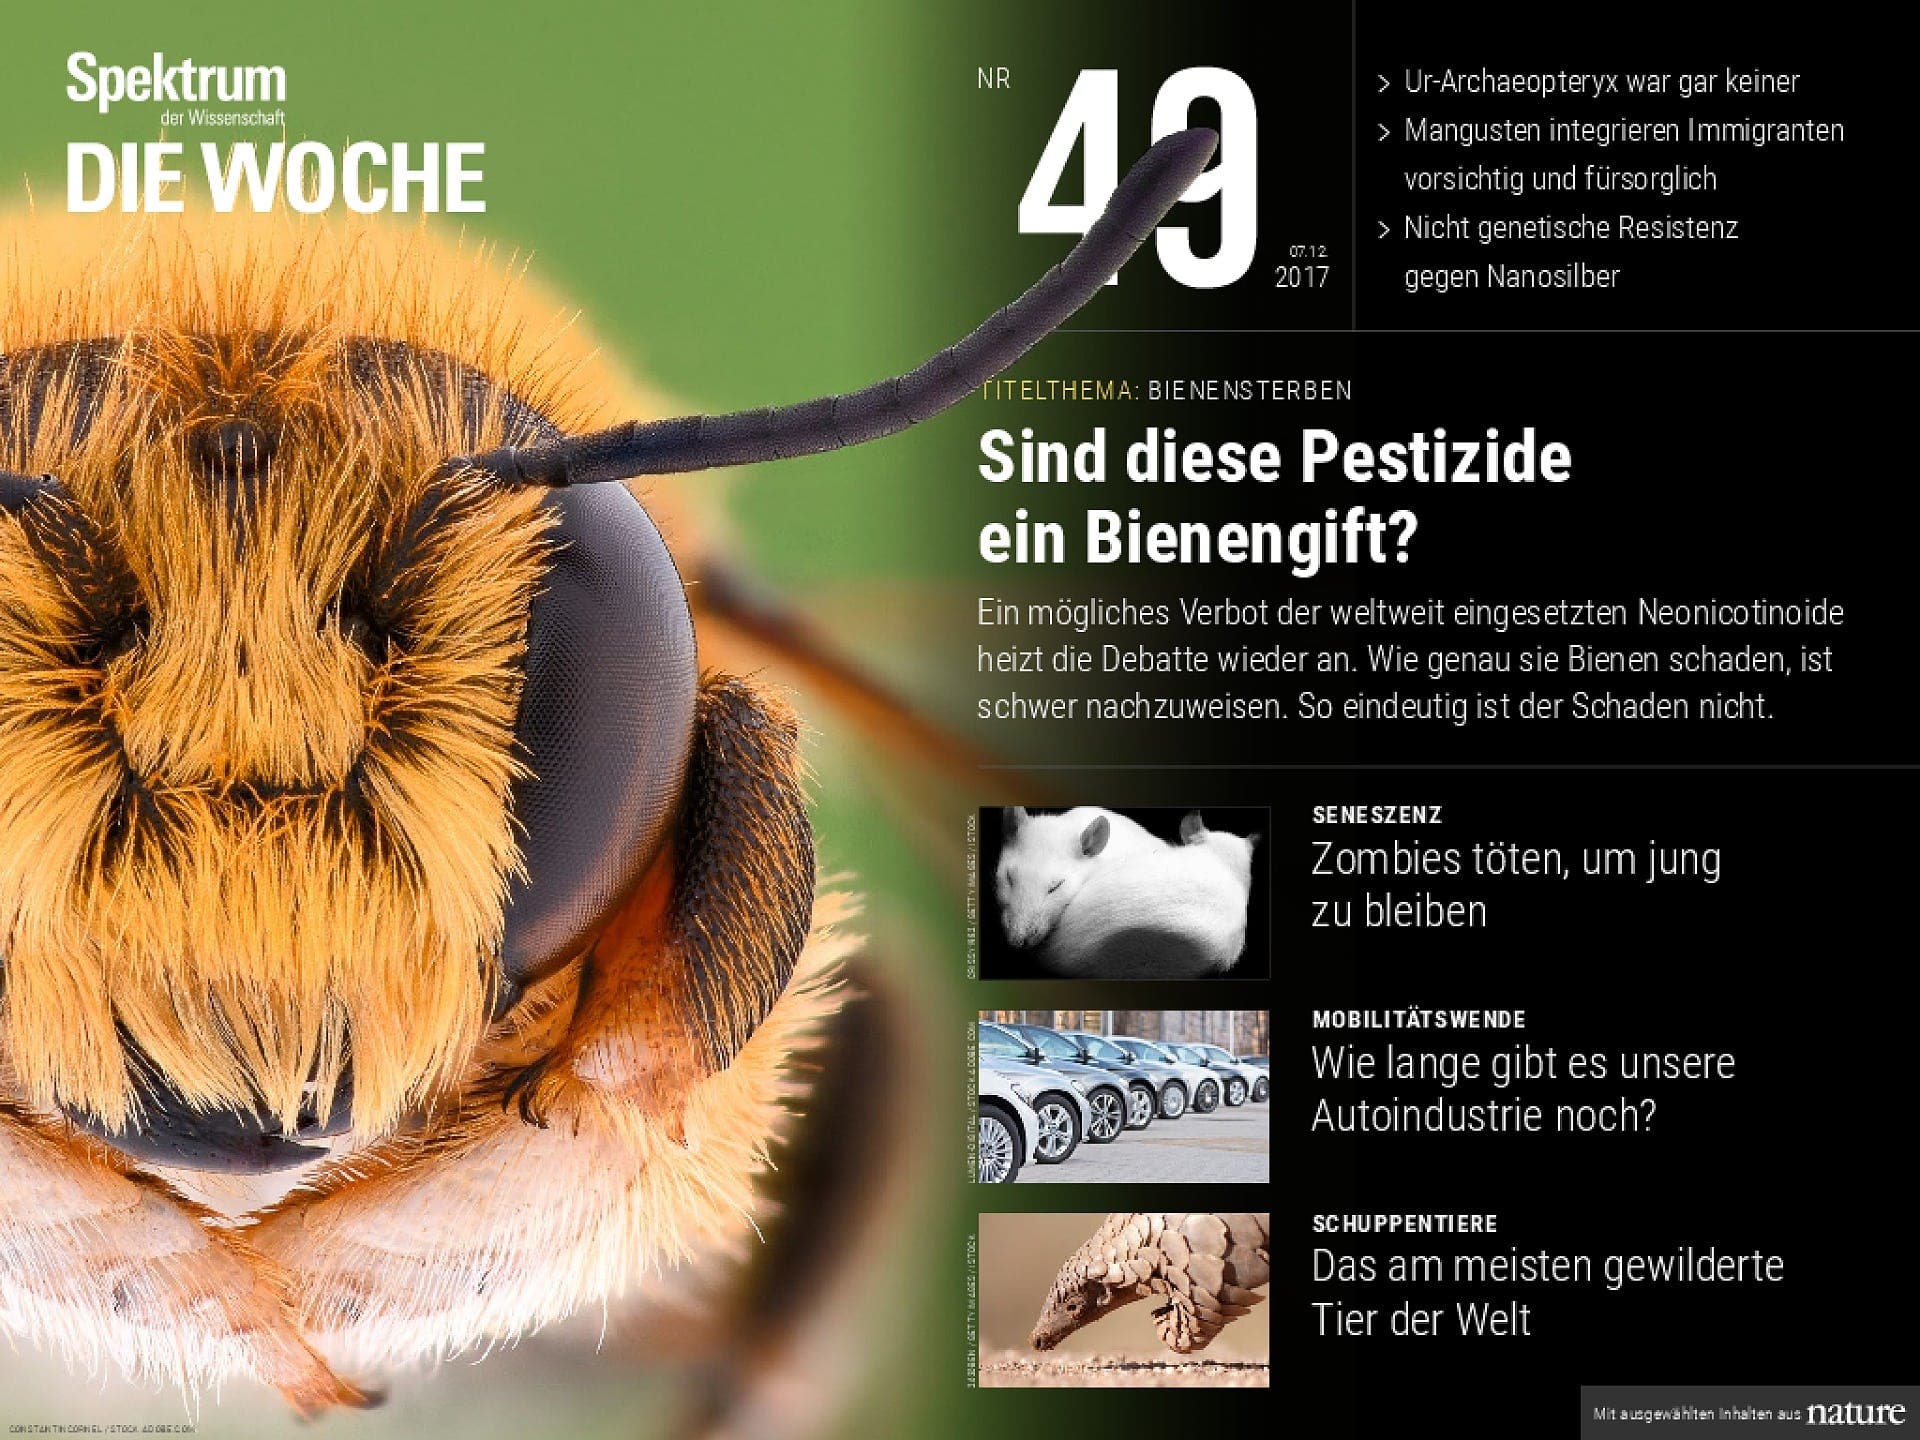 Sind diese Pestizide ein Bienengift?